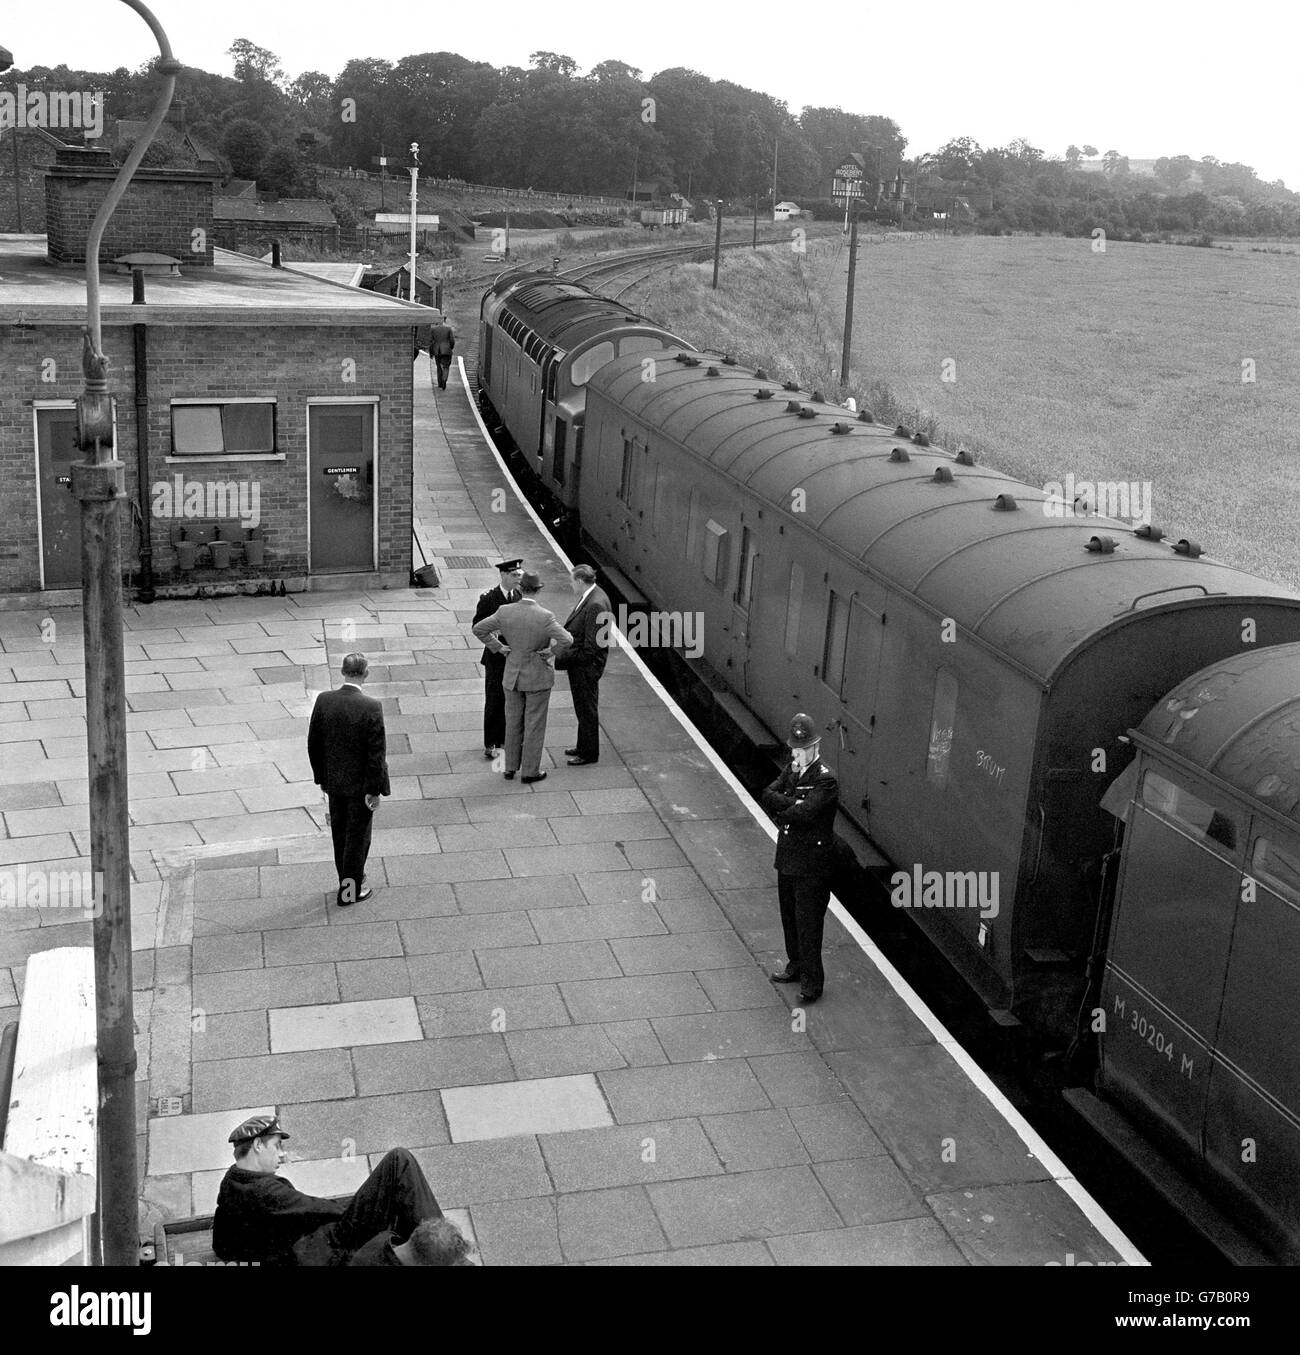 Die Trainer des Zuges waren im August 1963 an dem 2.5 Millionen Postraub - dem 'Großen Eisenbahnraub' - beteiligt, der von der Polizei auf der Cheddington Station, Buckinghamshire, bewacht wurde. Stockfoto